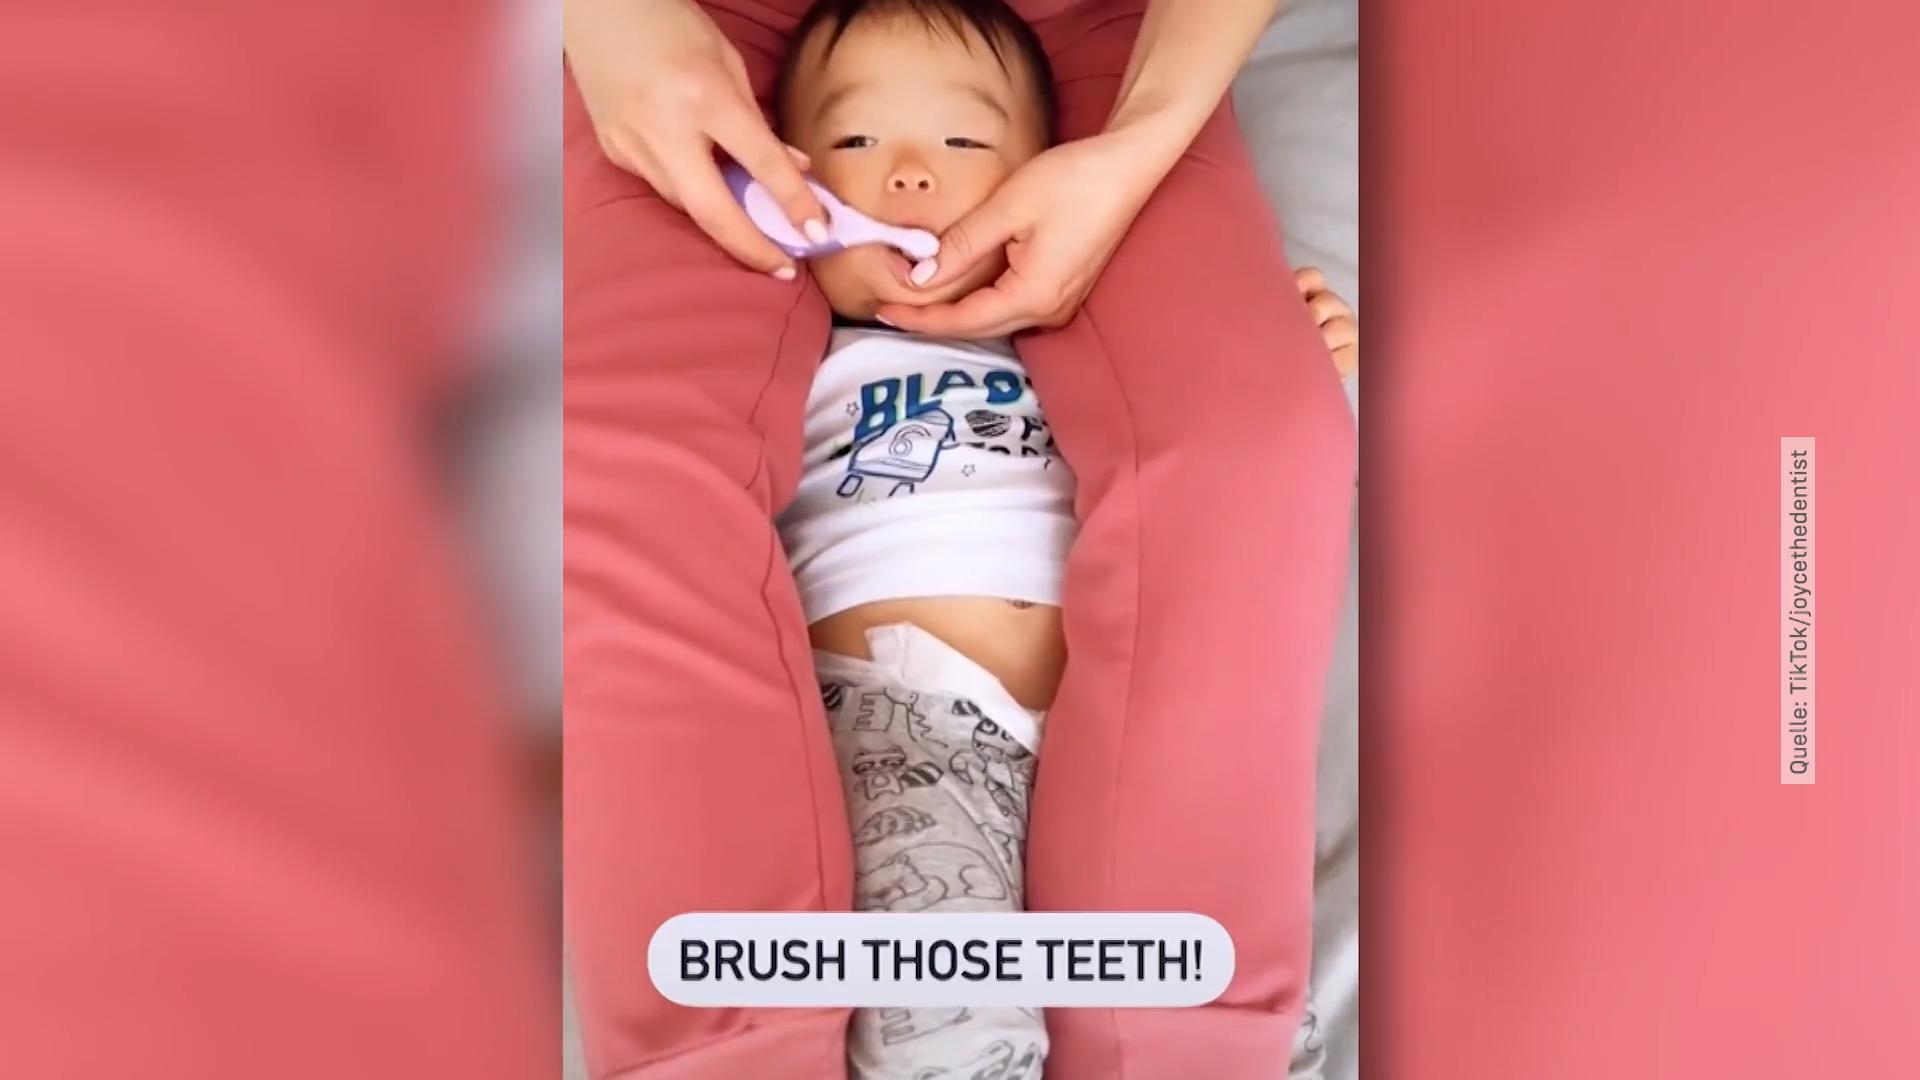 Geht so Zähneputzen bei Kindern? Zahnärztin empfiehlt „Kunstgriff“